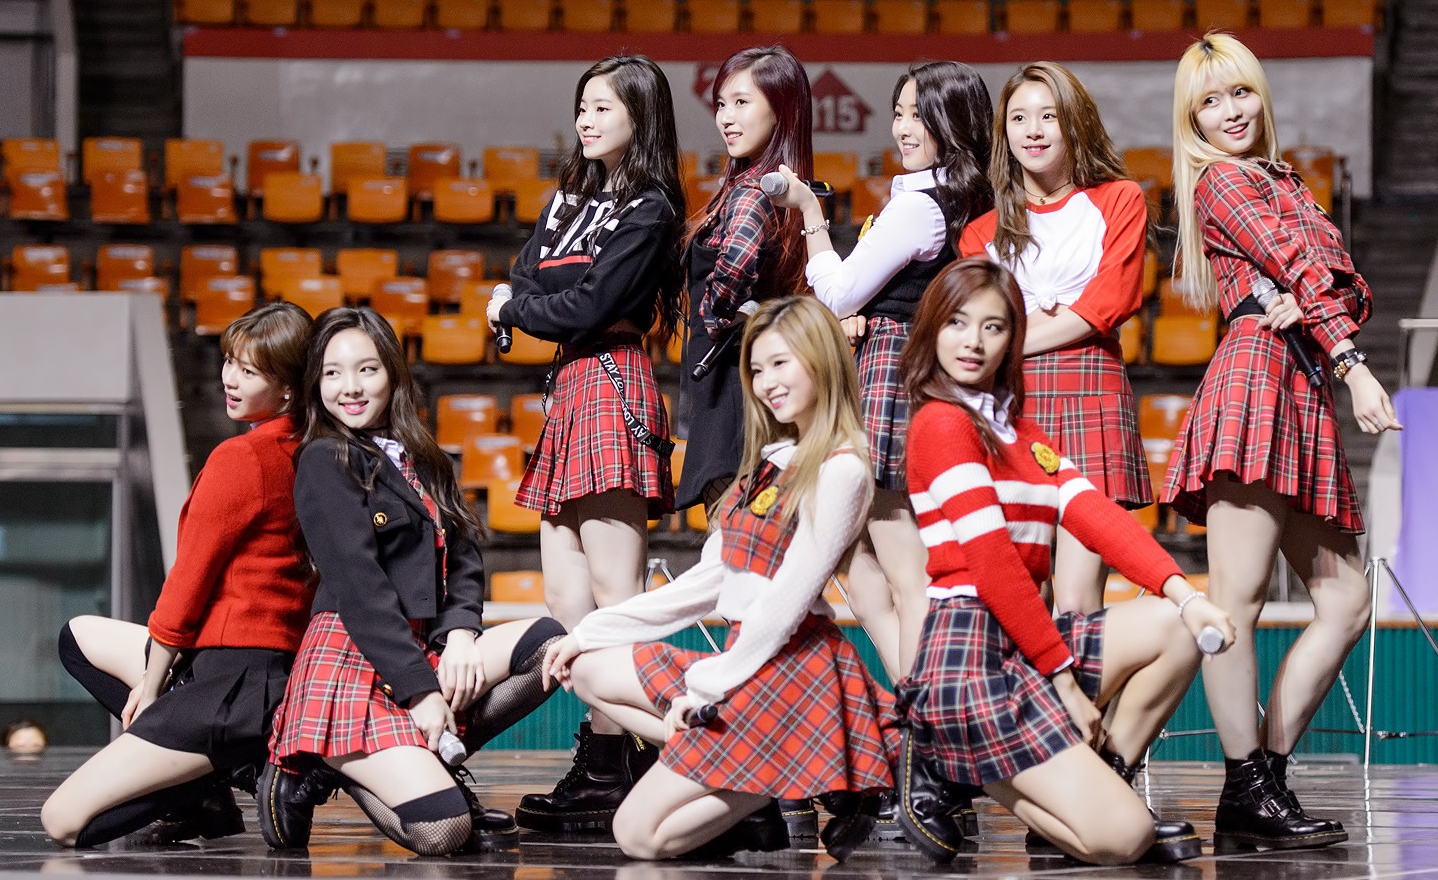 Twice Bersiap Ikut Masuk Daftar Grup yang Comeback Jelang Akhir Tahun?